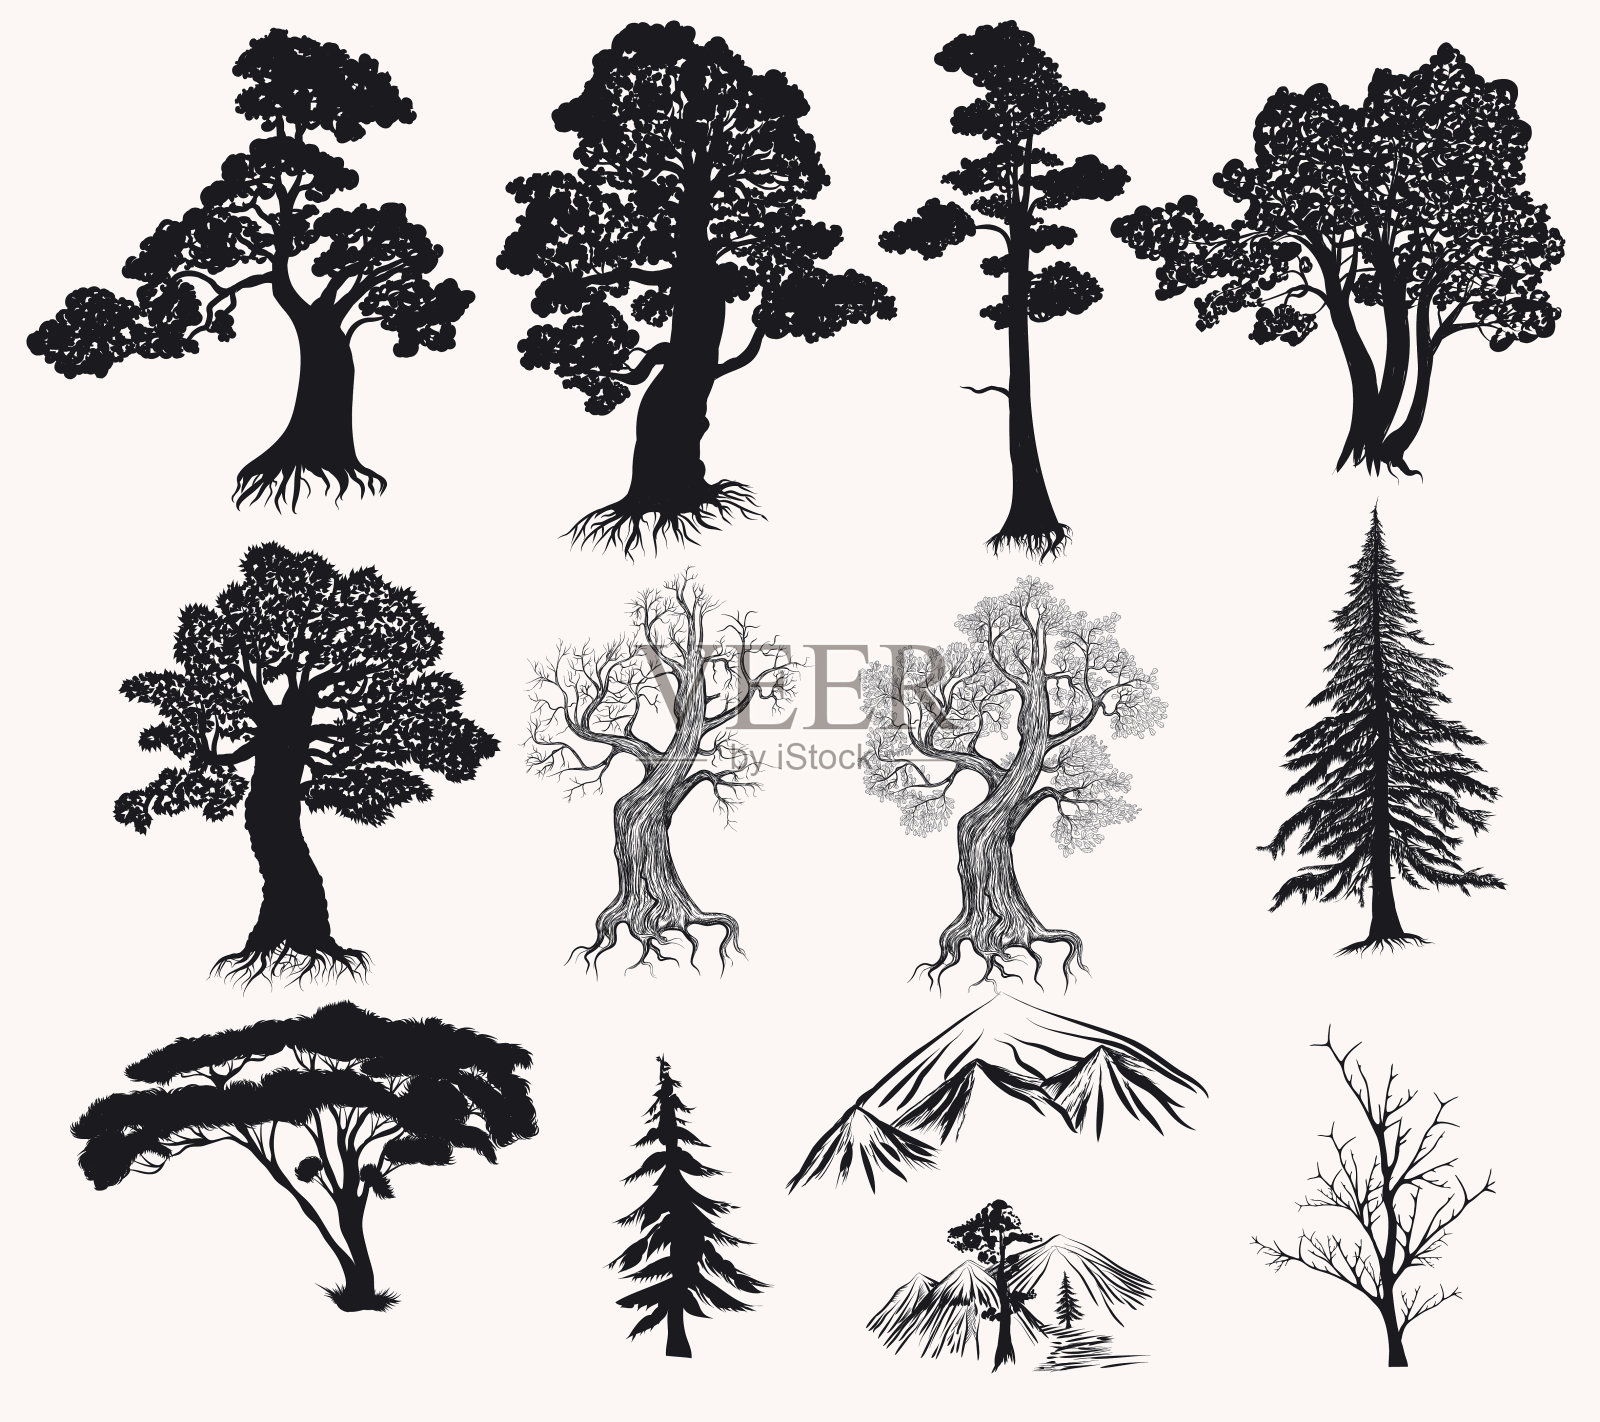 矢量集的手绘树木剪影设计插画图片素材